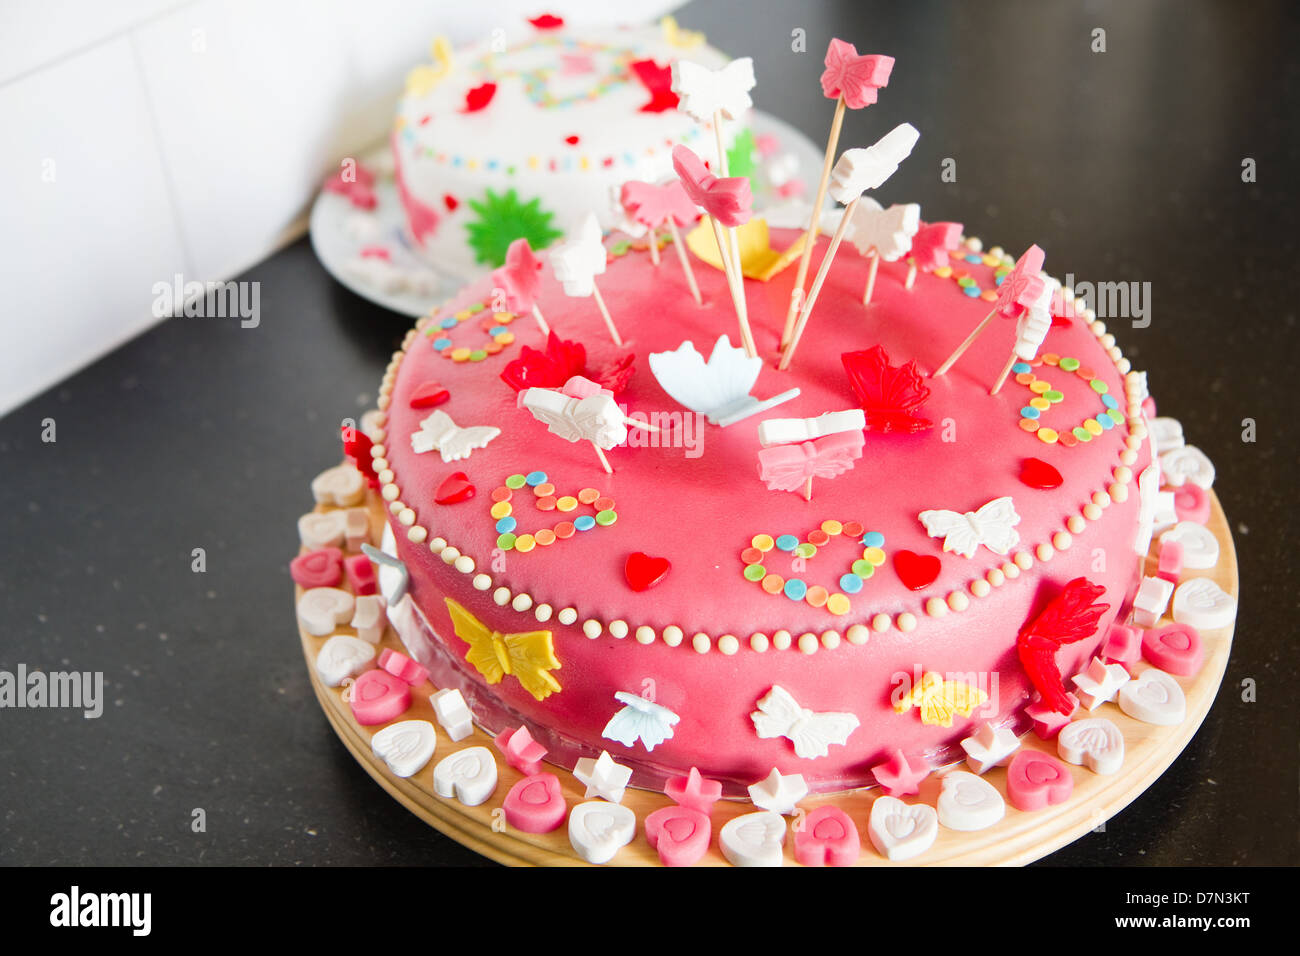 Decorazioni colorate di bianco e rosa marzapane torte per una festa di compleanno sul comò da cucina Foto Stock